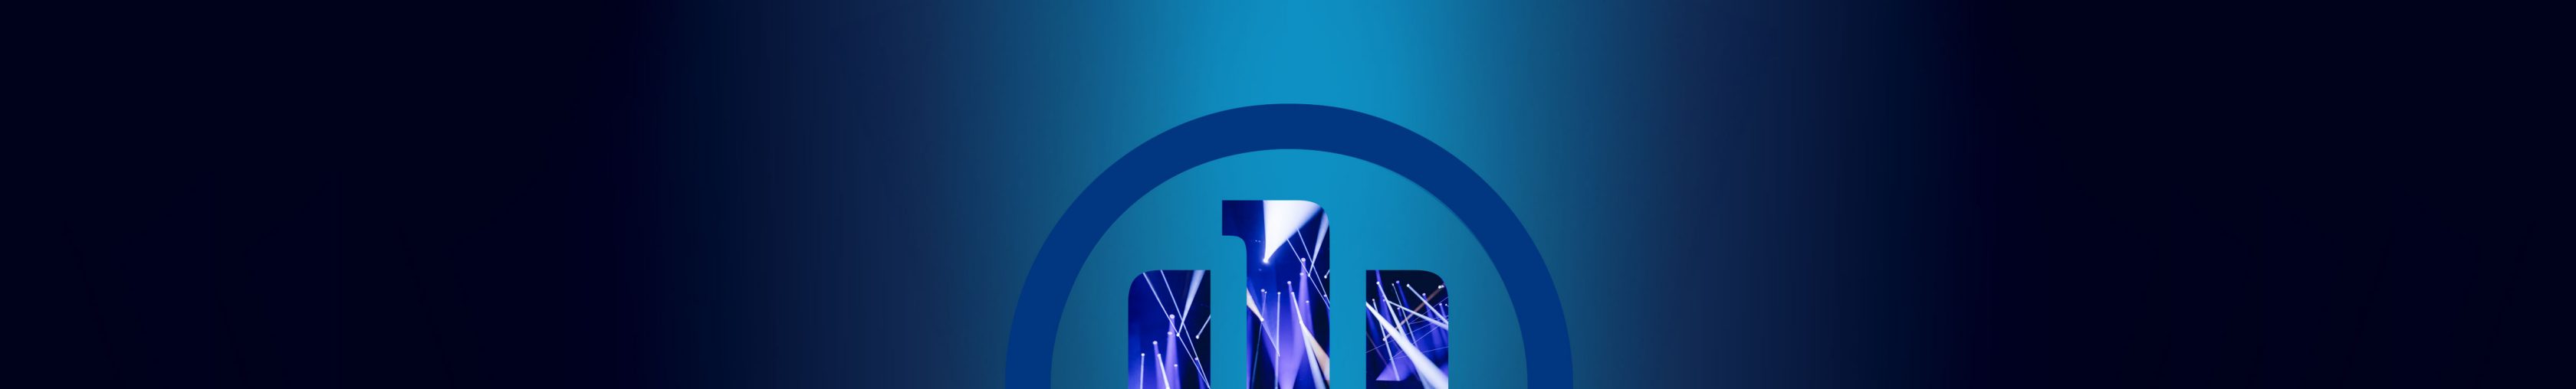 Allianz 3D-Adler logo auf einem dunklen Hintergrund mit Farbverlauf, Ausschnitt von abstrakten Scheinwerferlichtern als Logo-Hintergrundfüllung